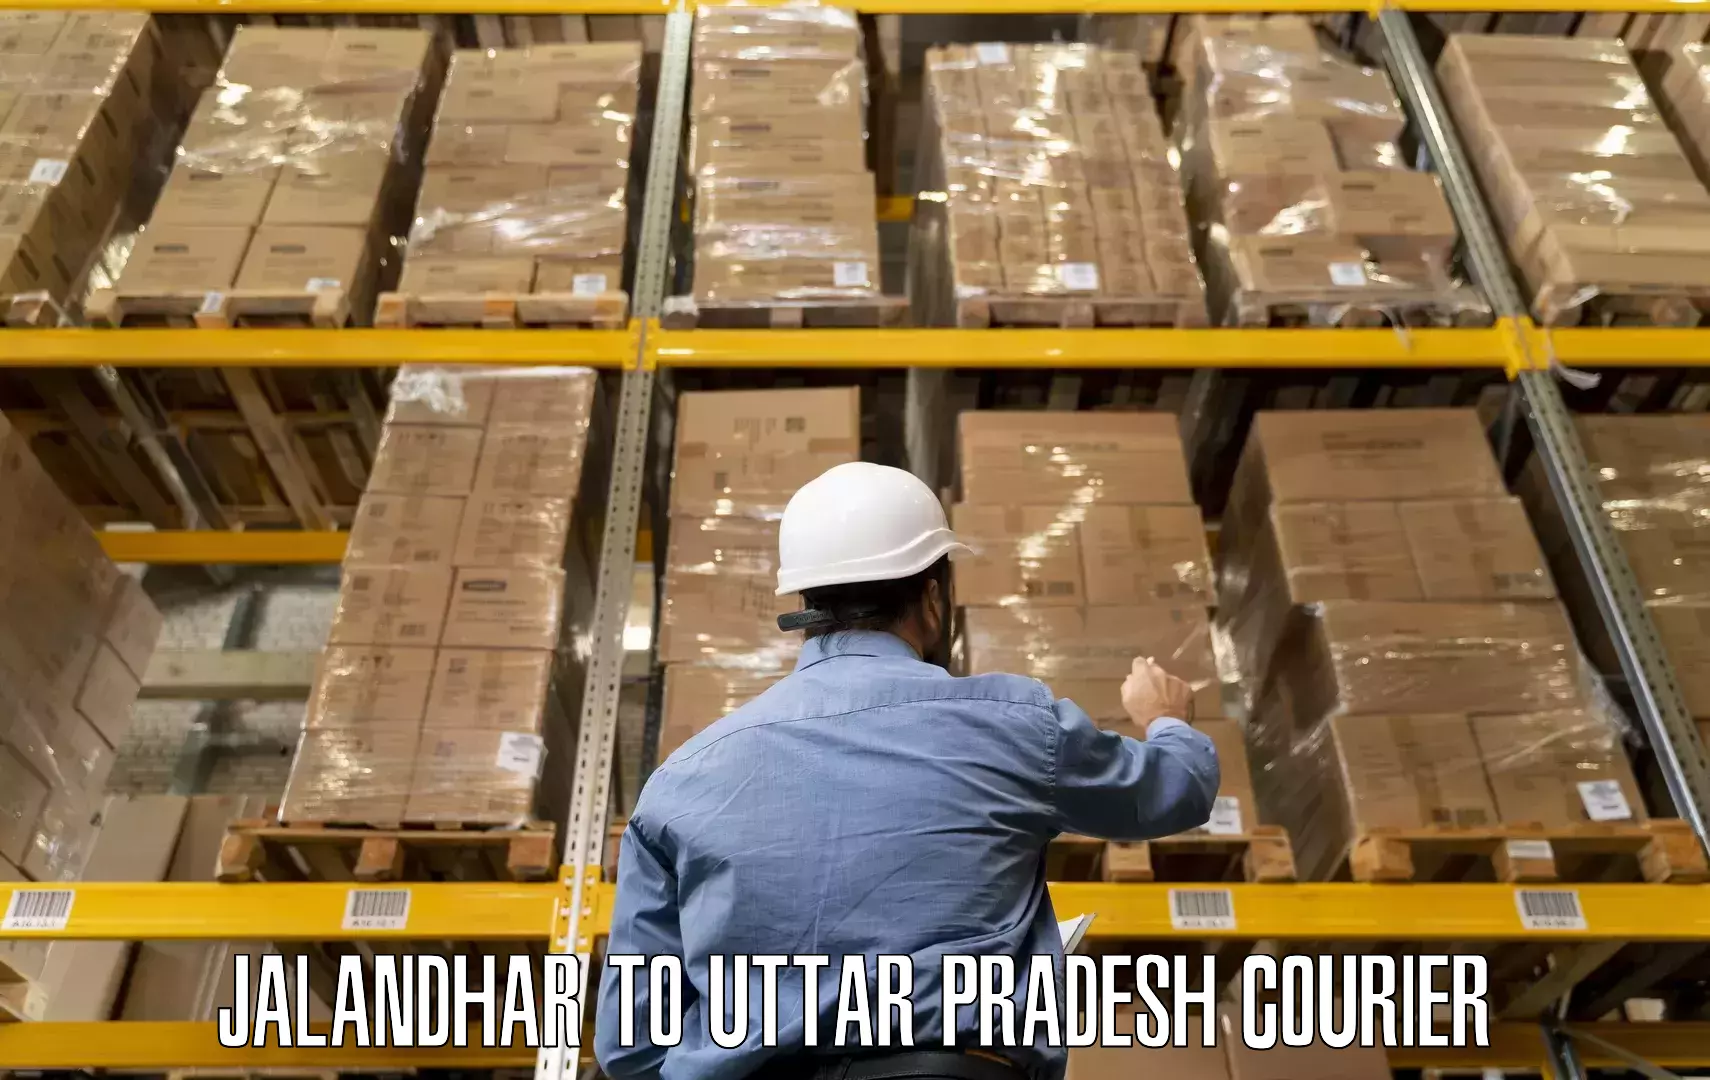 Professional packing and transport Jalandhar to Aunrihar